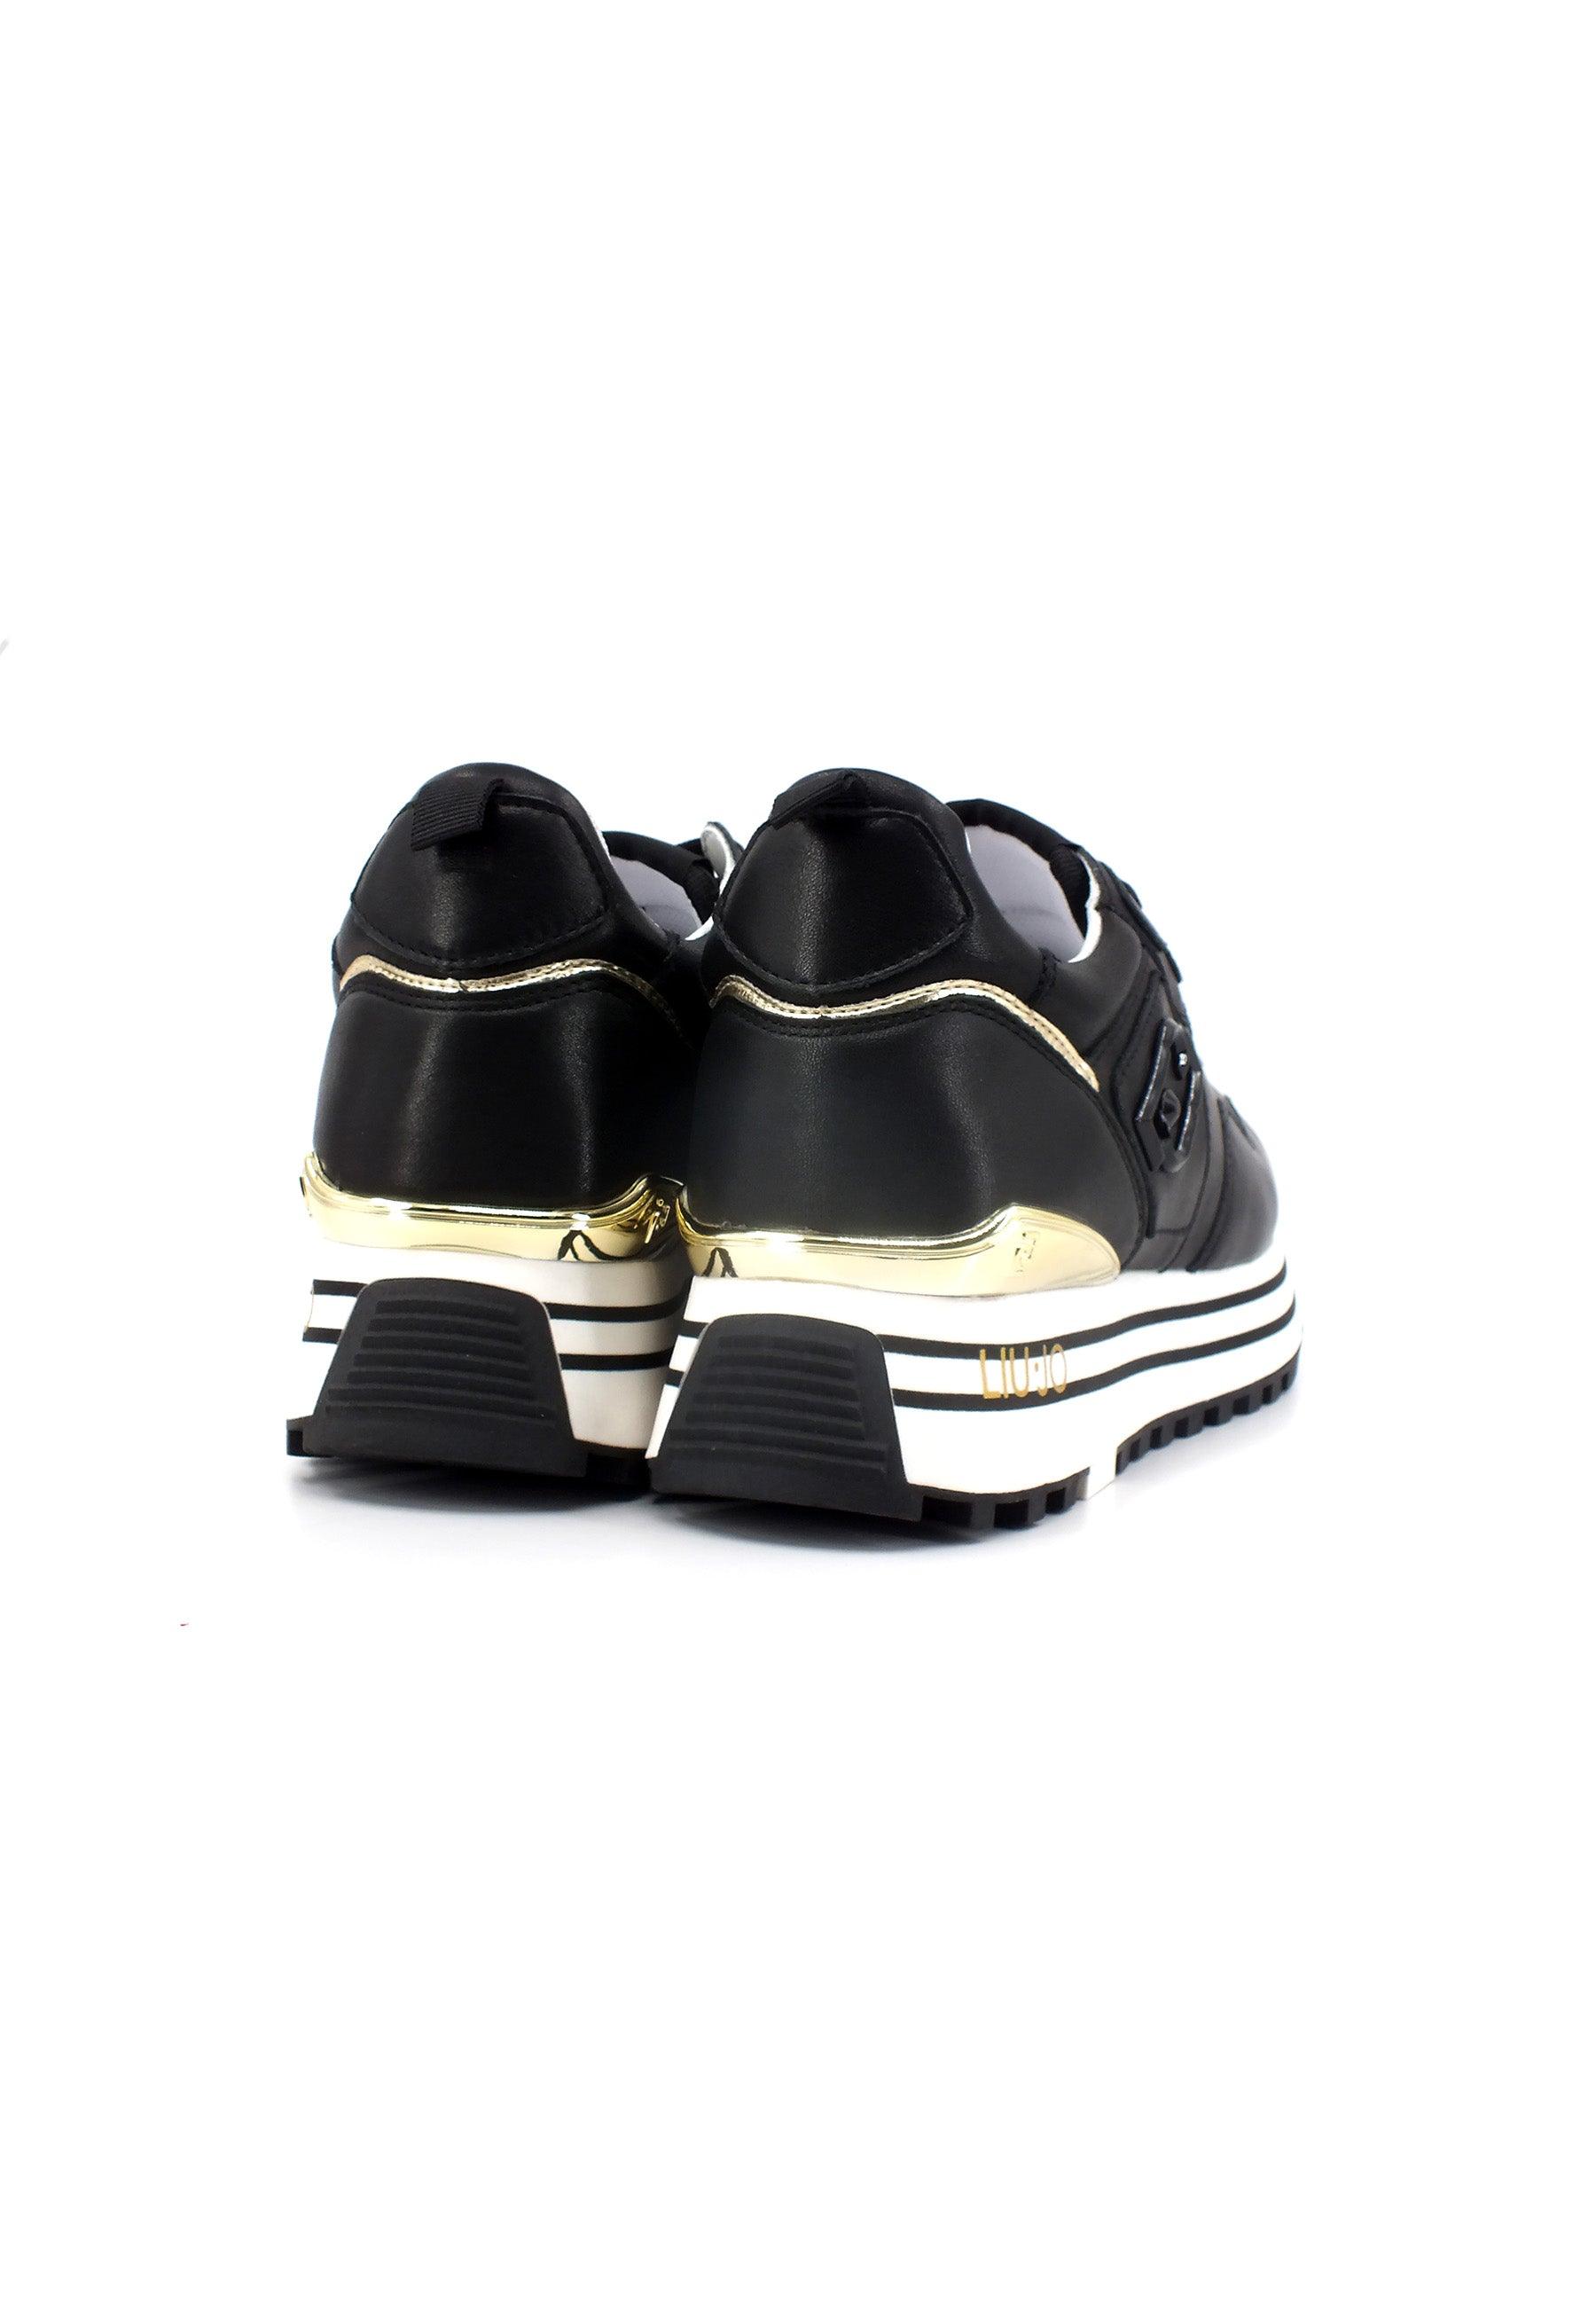 LIU JO Maxi Wonder 01 Sneaker Donna Black BF3003P0102 - Sandrini Calzature e Abbigliamento